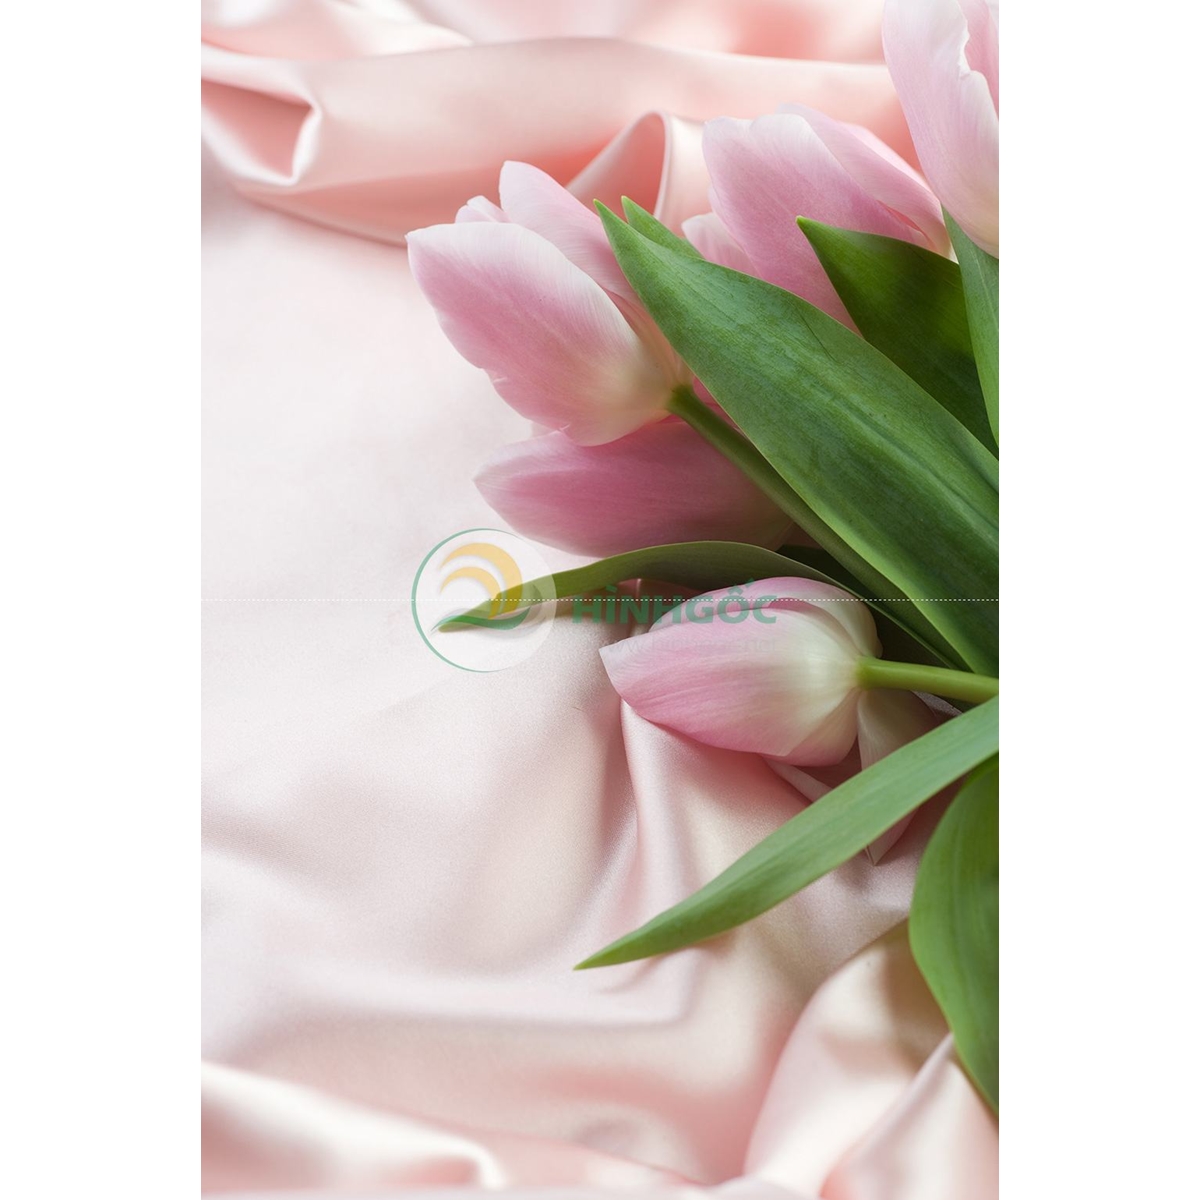 Bộ Sưu Tập Hình Ảnh Hoa Tulip Tuyệt Đẹp Với Hơn 999 Thành Phần Và Chất